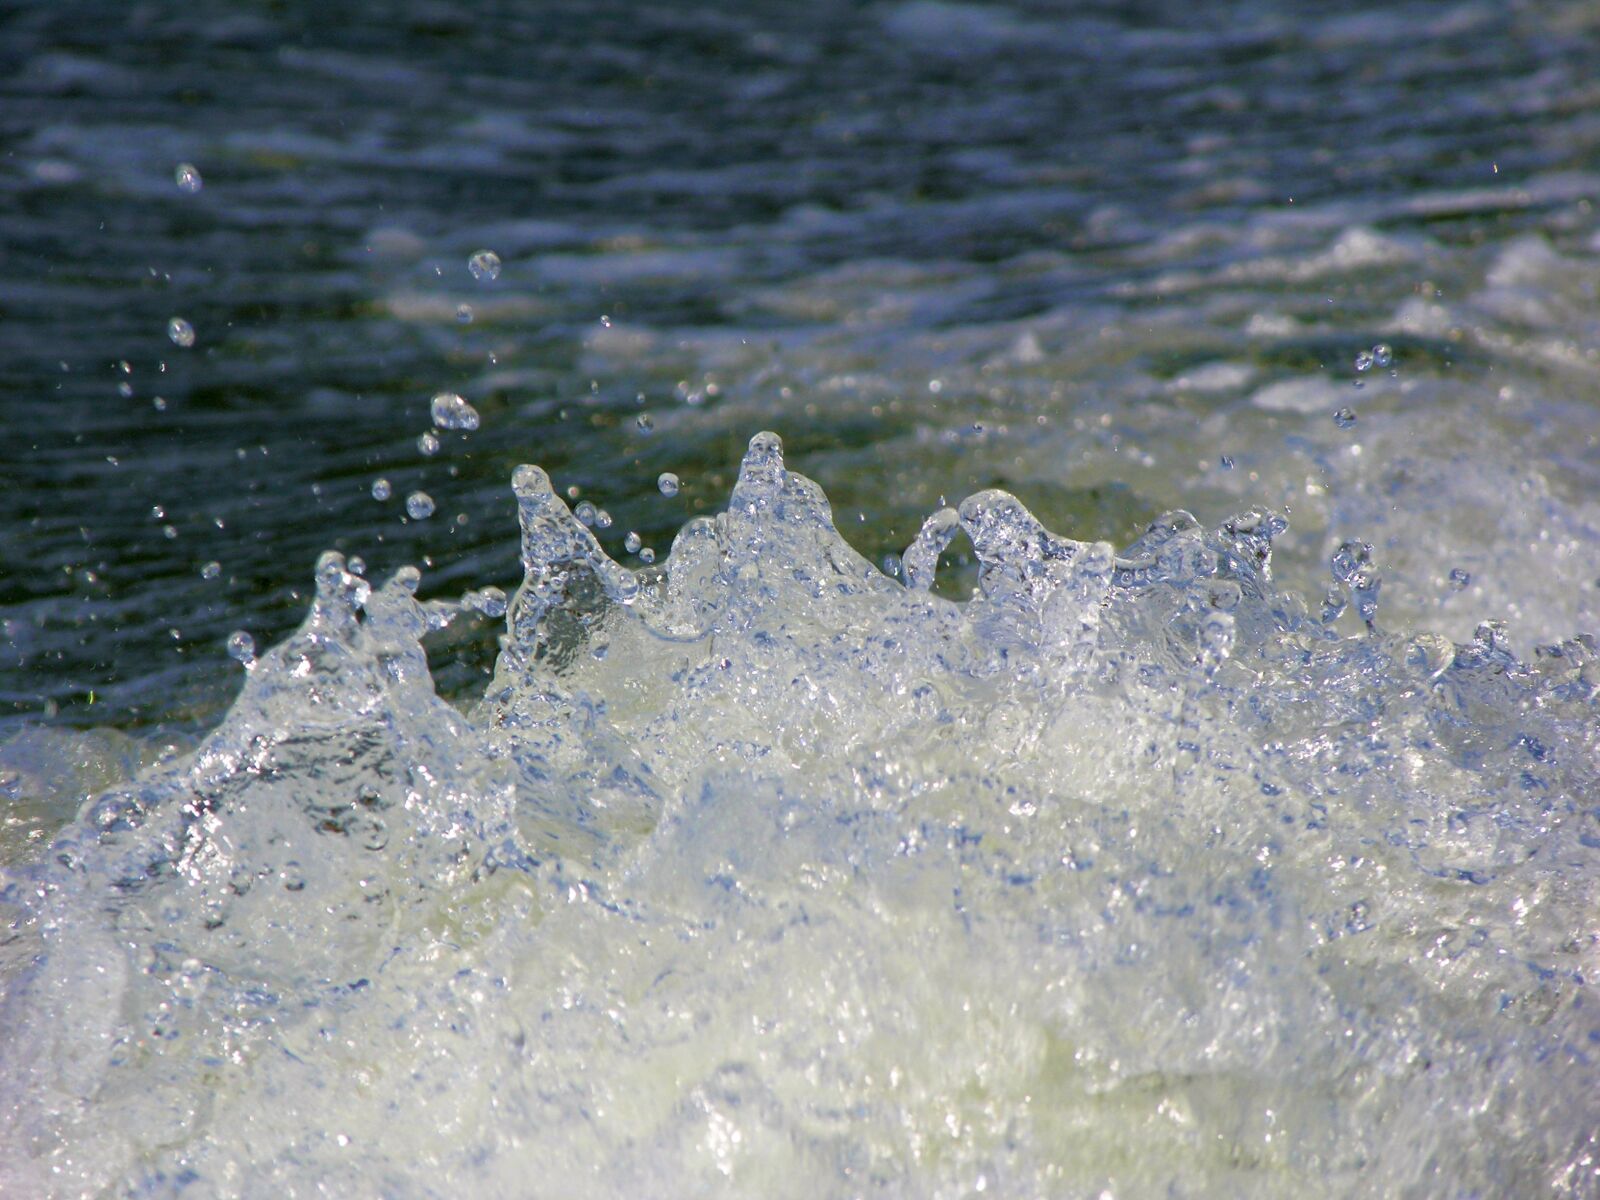 Nikon E8700 sample photo. Greece, river, water photography